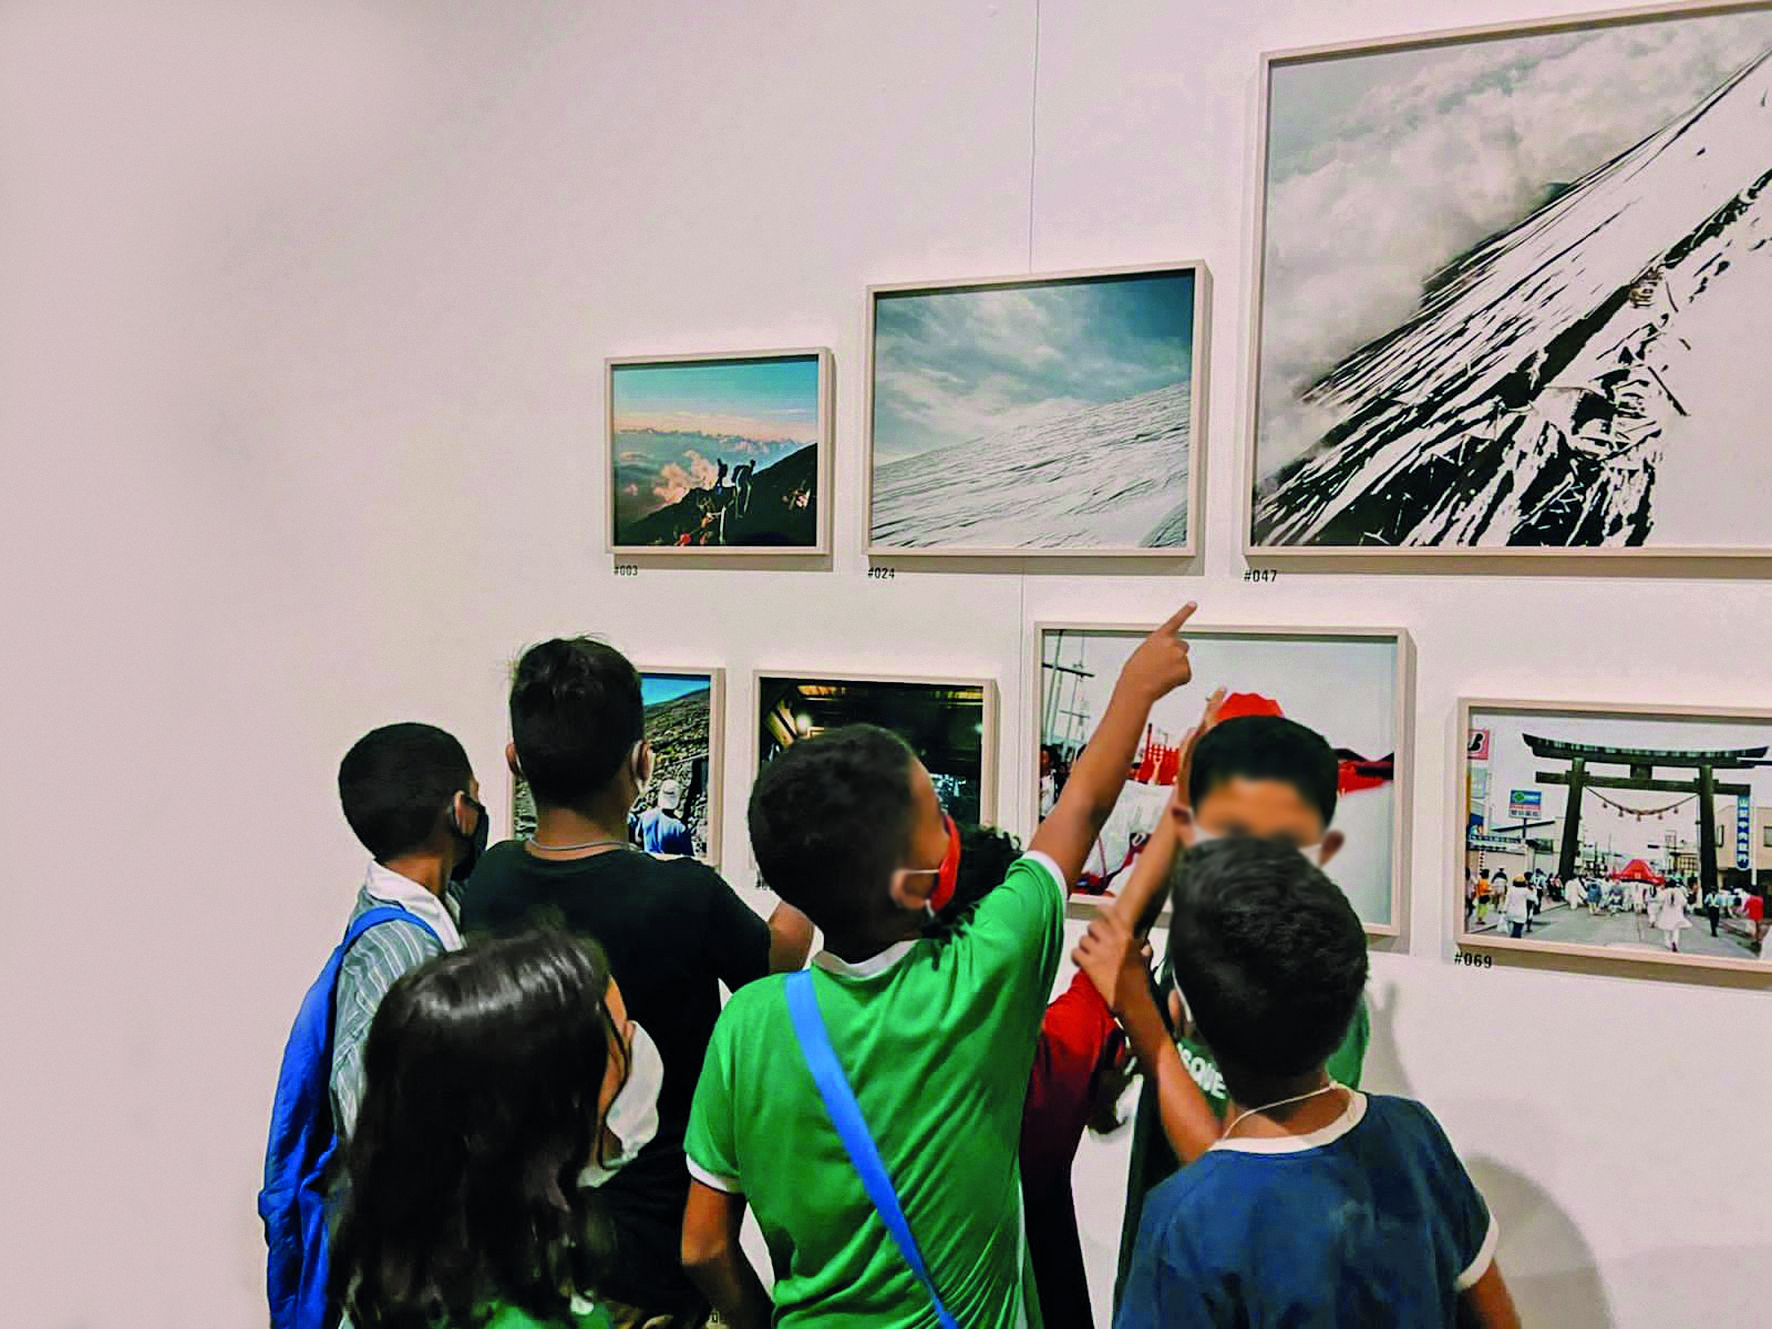 Fotografia. Um grupo de crianças a frente de quadros em exposição sobre uma parede branca.